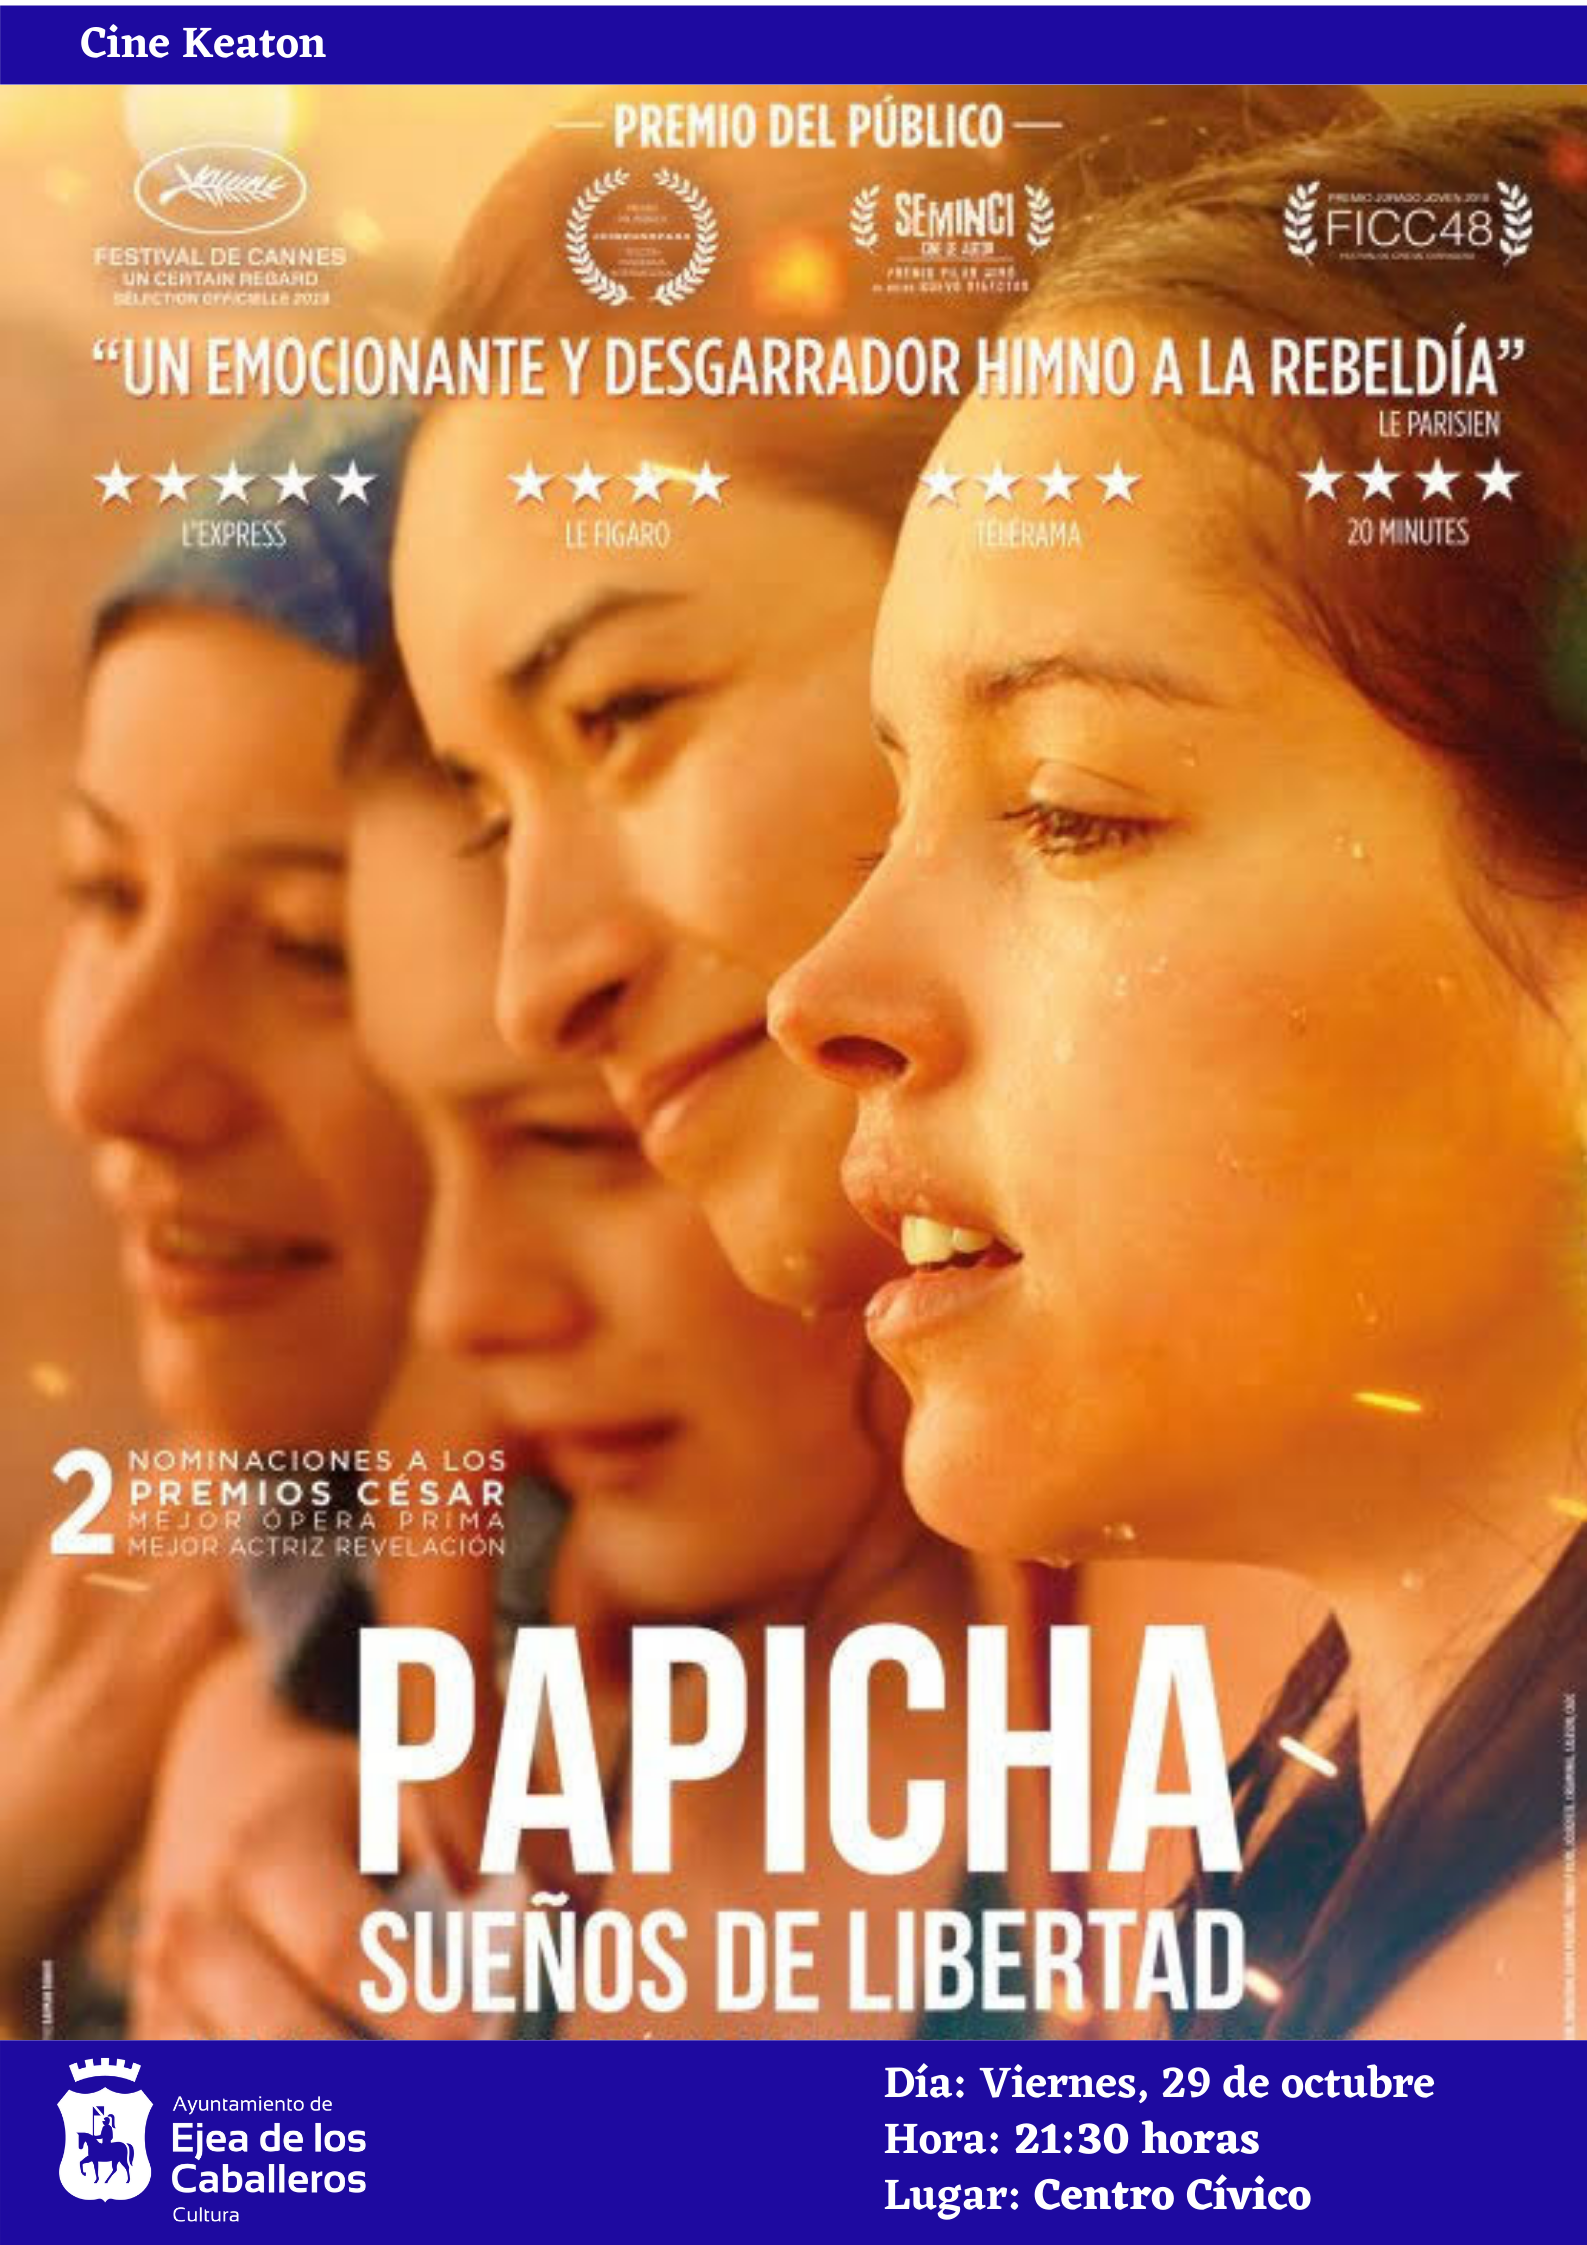 En este momento estás viendo El ciclo Keaton propone “Papicha, sueños de libertad”, una película sobre la libertad de las mujeres en el mundo árabe, basada en hechos reales